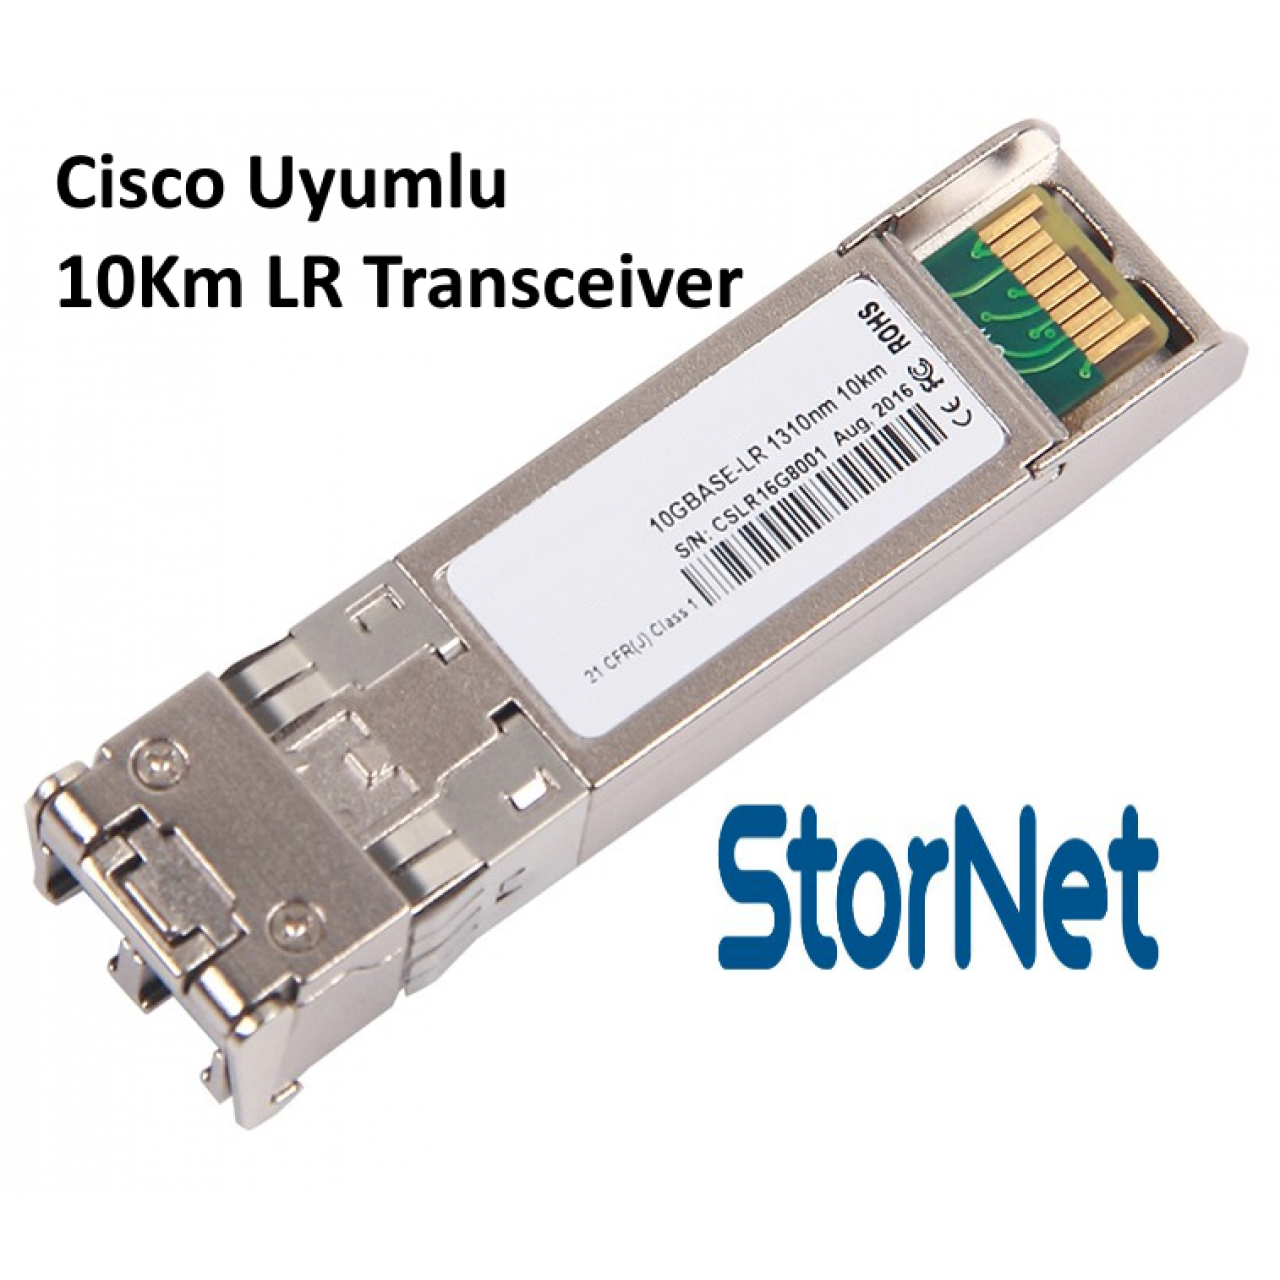 SFP+ 10Gbps SMF, 1310nm 10KM Cisco Uyumlu LR Transceiver - StorNET